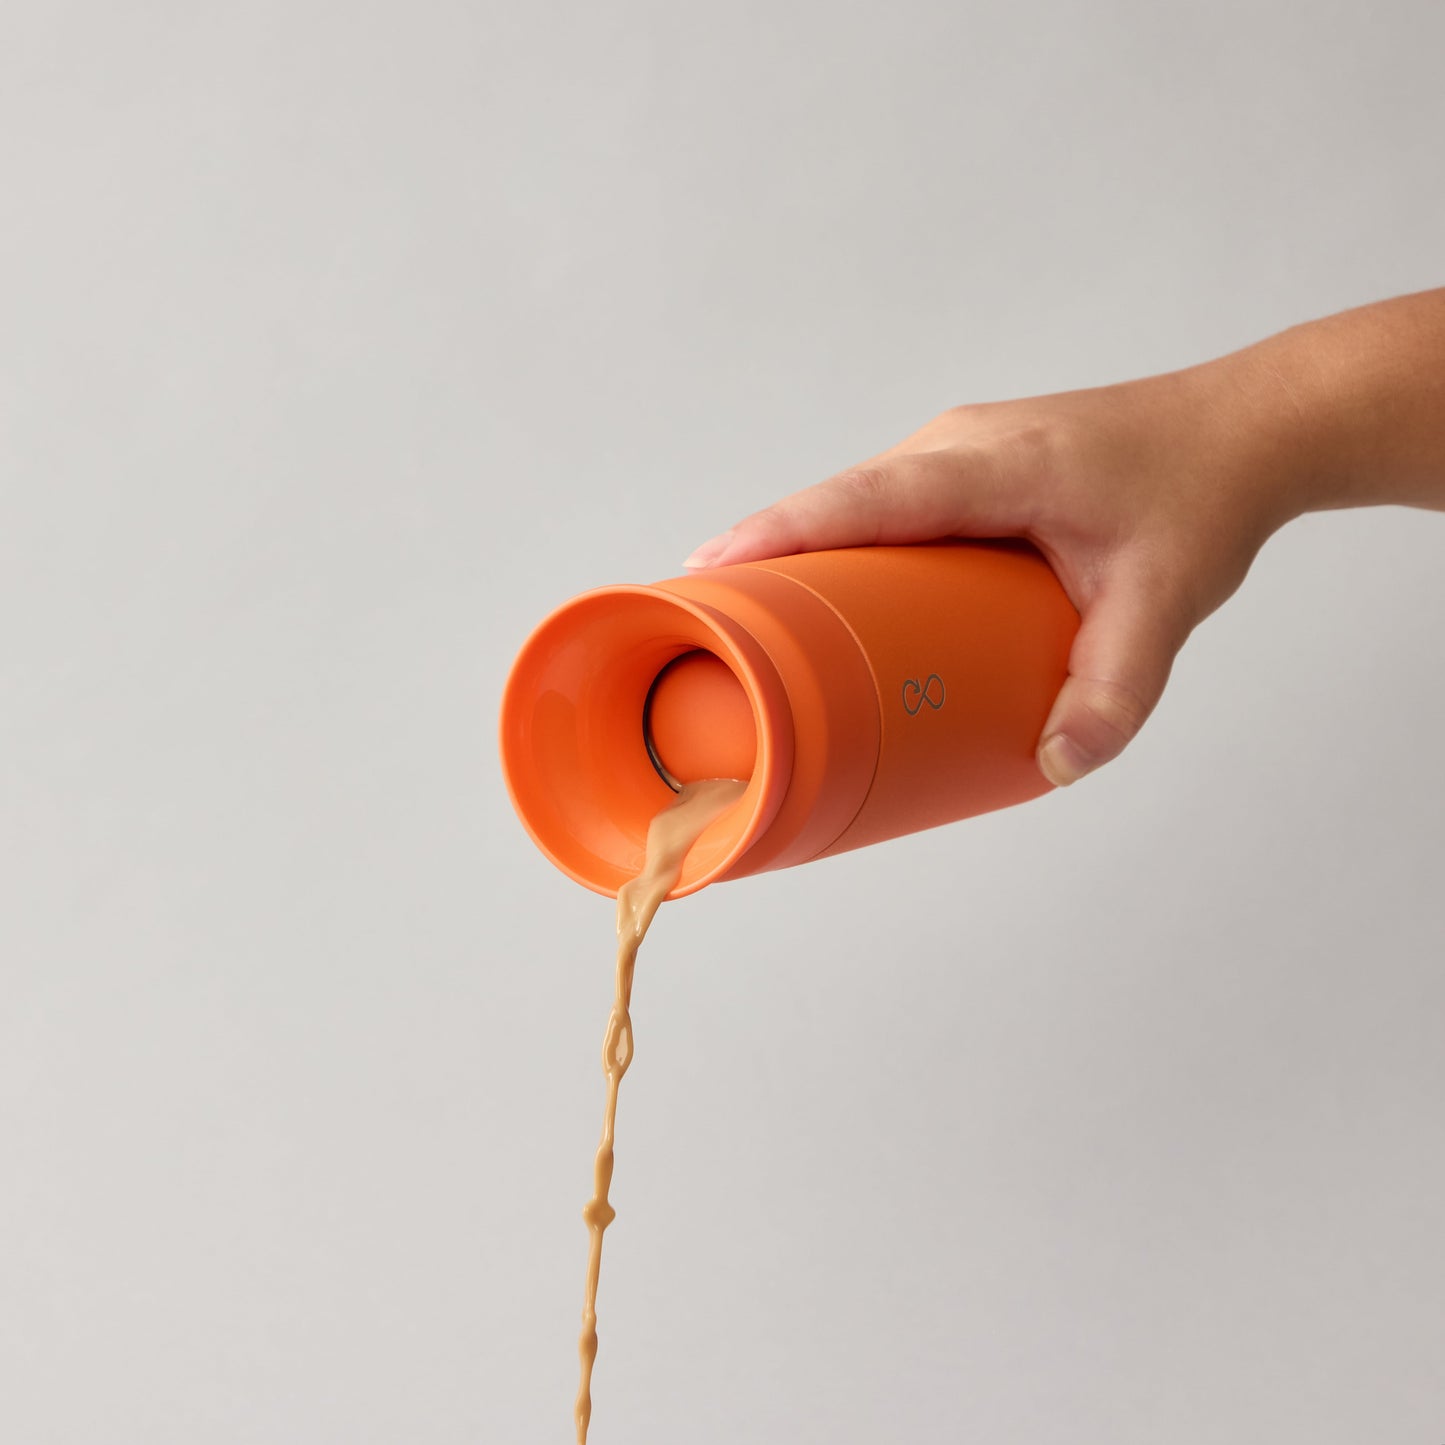 Brew Flask - Sun Orange (350ml)